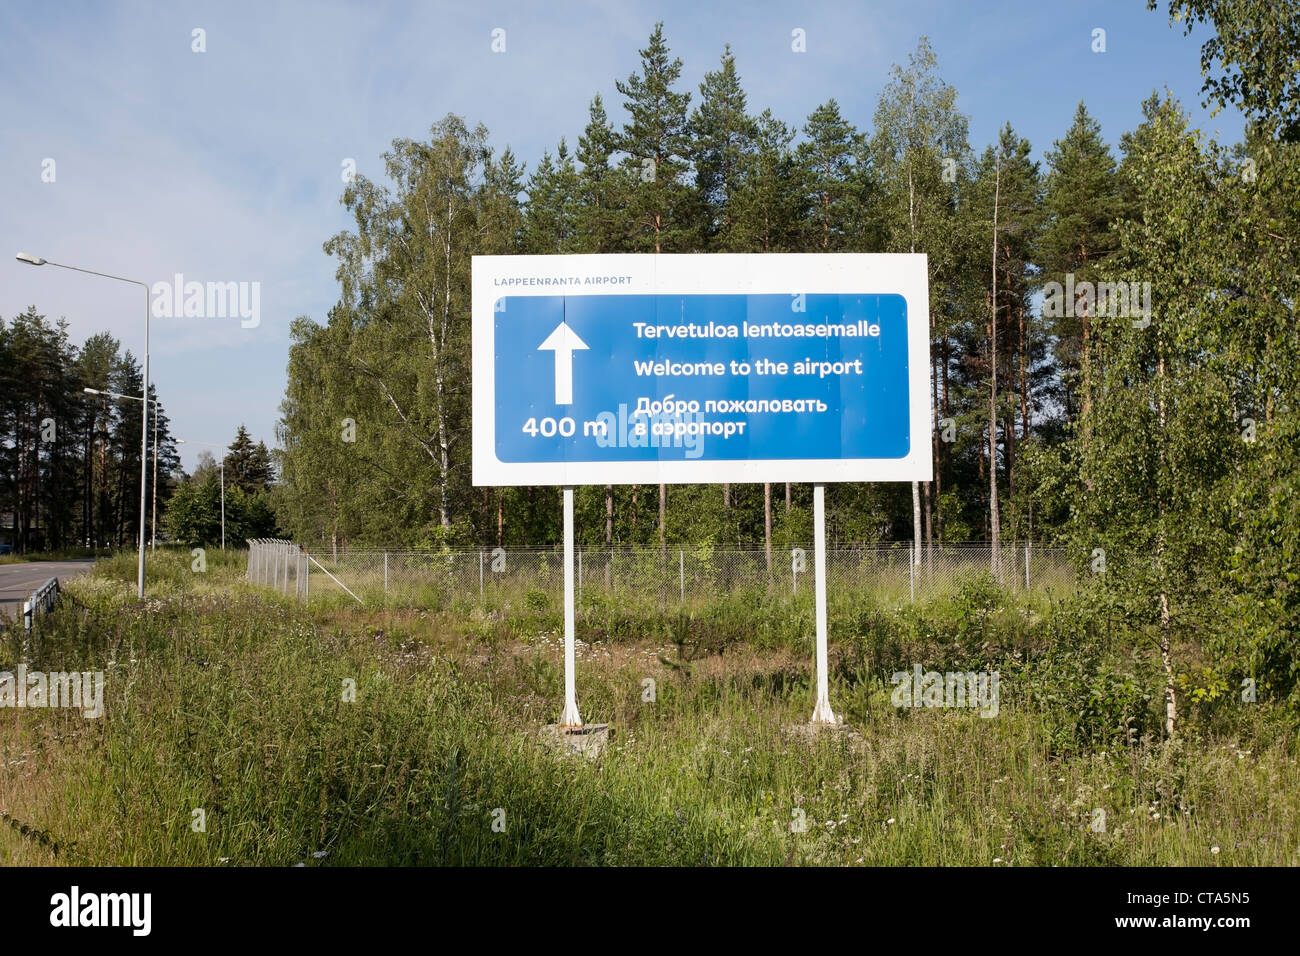 Bienvenido al signo del aeropuerto de Lappeenranta, Finlandia Foto de stock